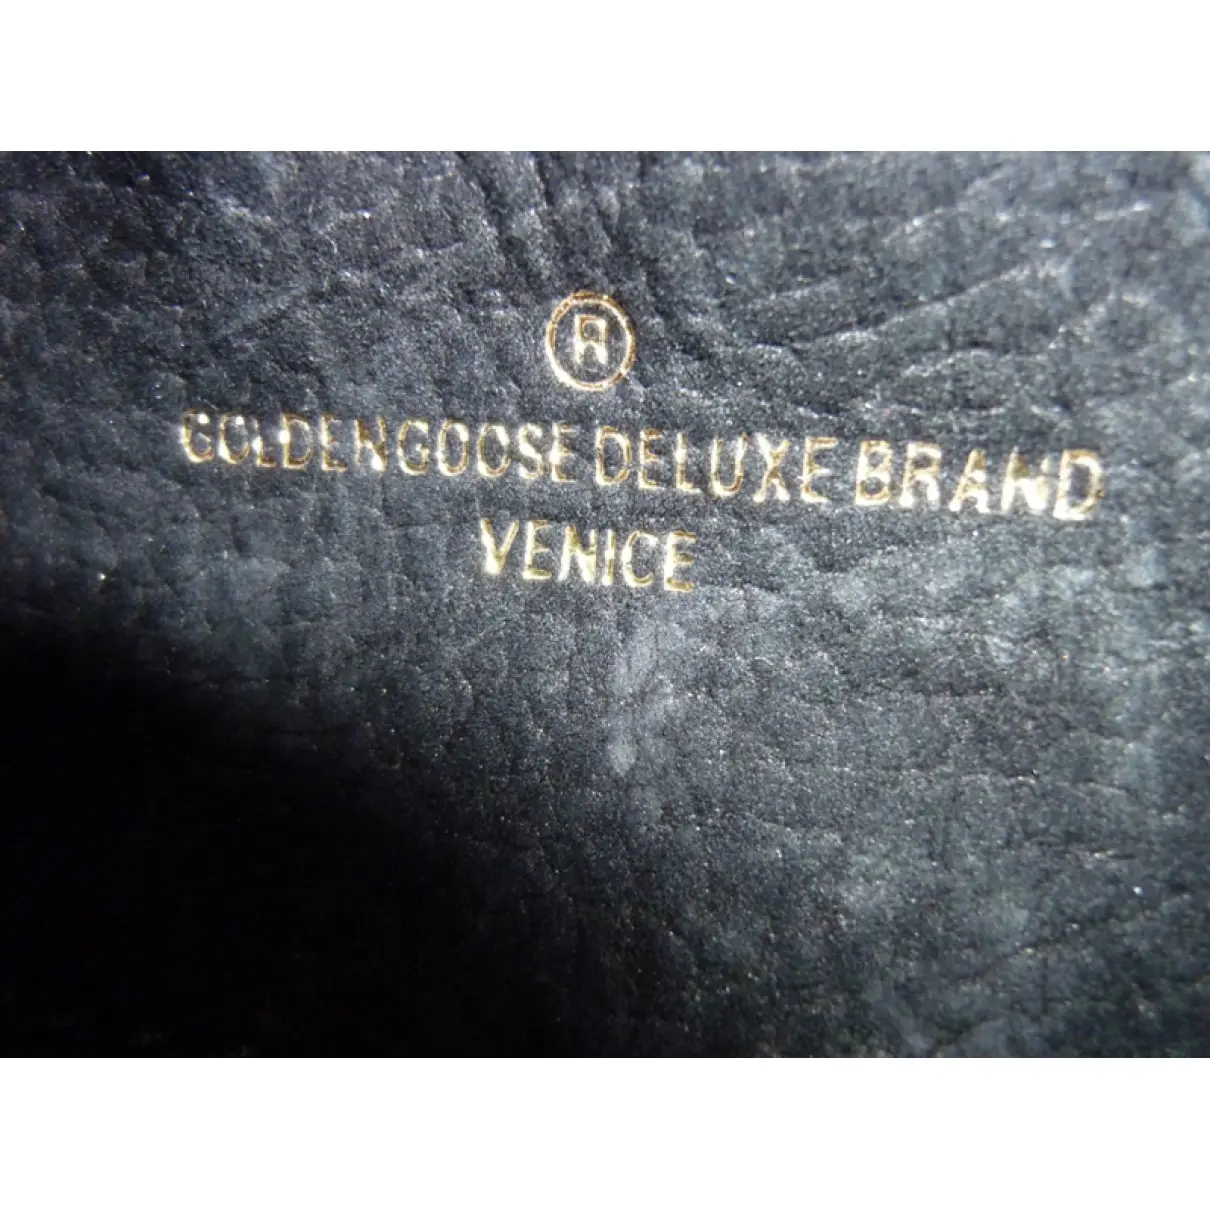 Golden Goose Black Leather Handbag for sale